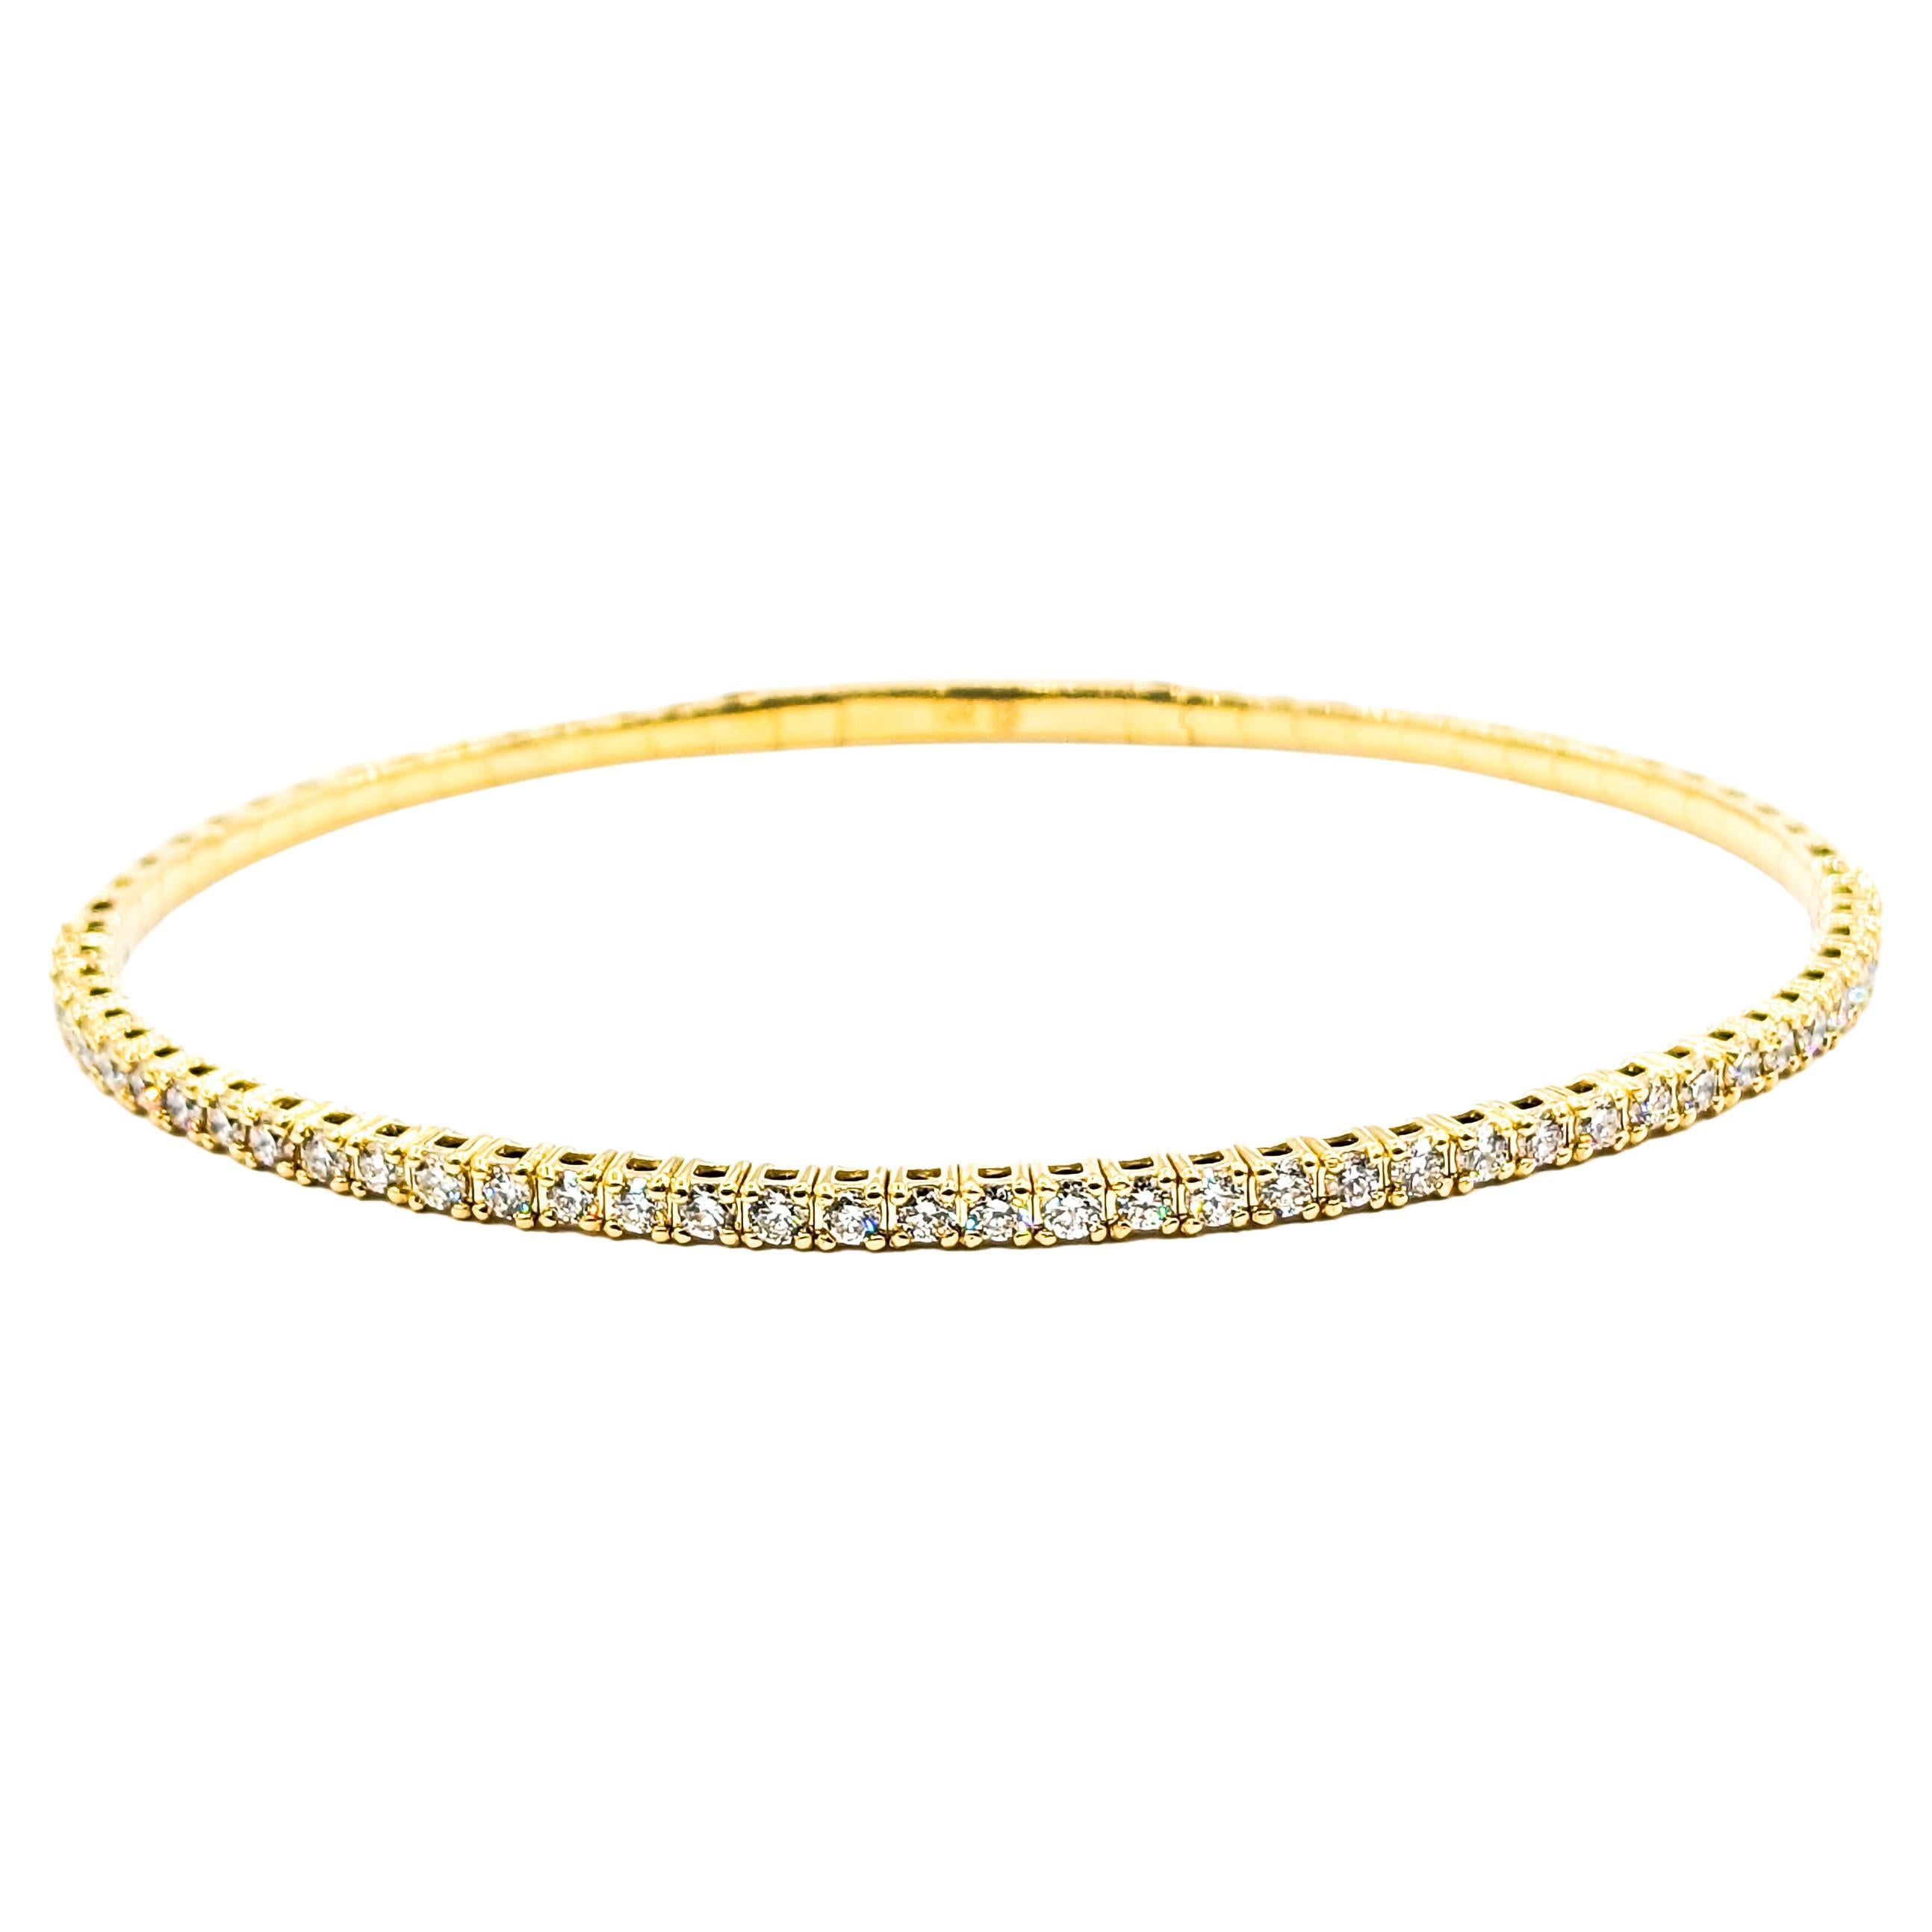 Rubin & Diamant Halskette Bar Gelbgold

Unsere atemberaubende Halskette ist aus 14-karätigem Gelbgold gefertigt und mit einer Reihe von funkelnden Diamanten von 0,09 Karat besetzt. Diese Diamanten mit SI-Reinheit und nahezu farblosem Aussehen